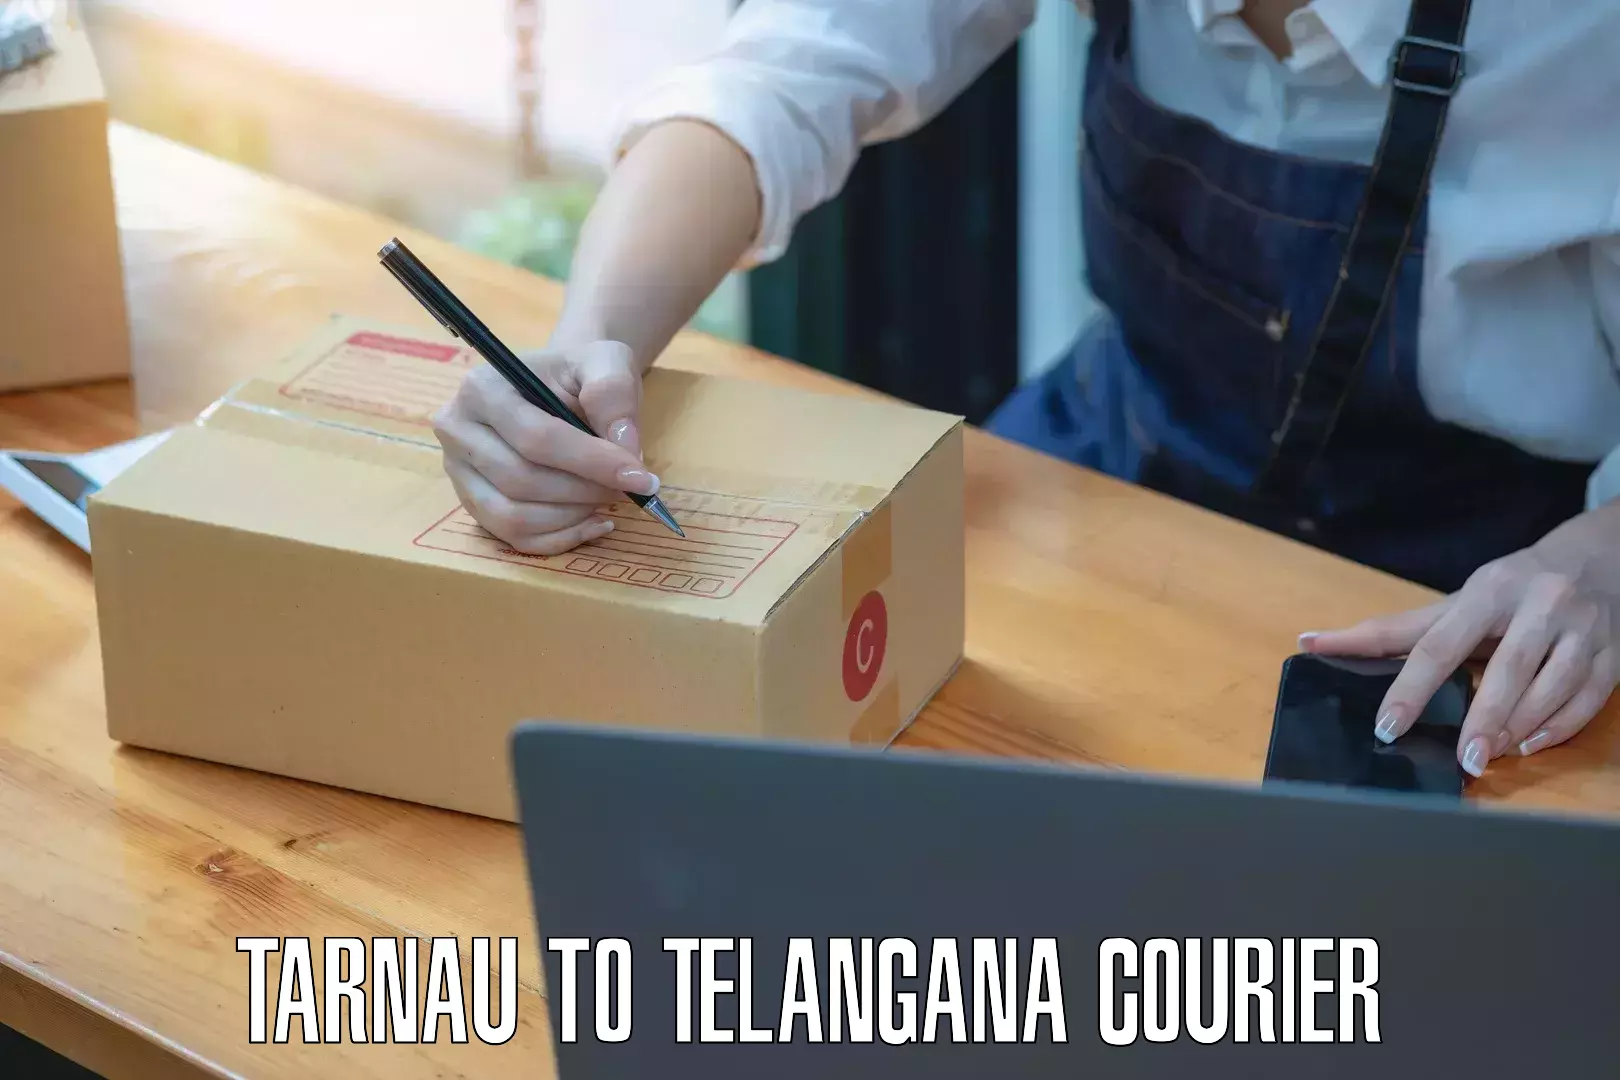 Customer-oriented courier services Tarnau to Khammam